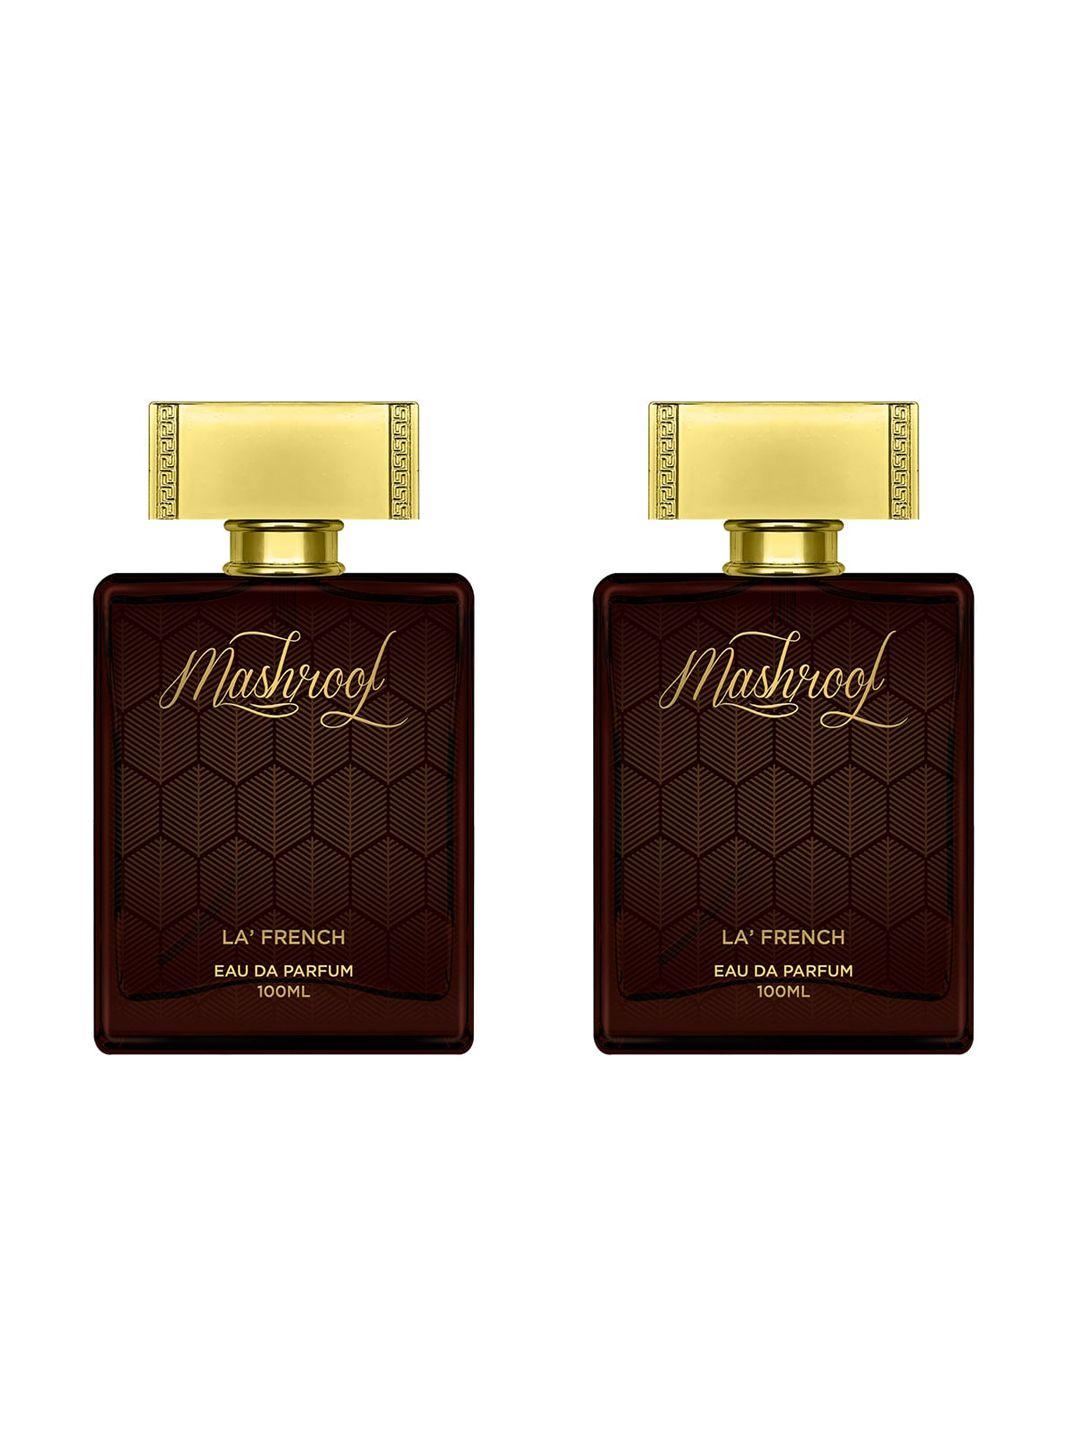 la french set of 2 mashroof eau de parfum - 100ml each